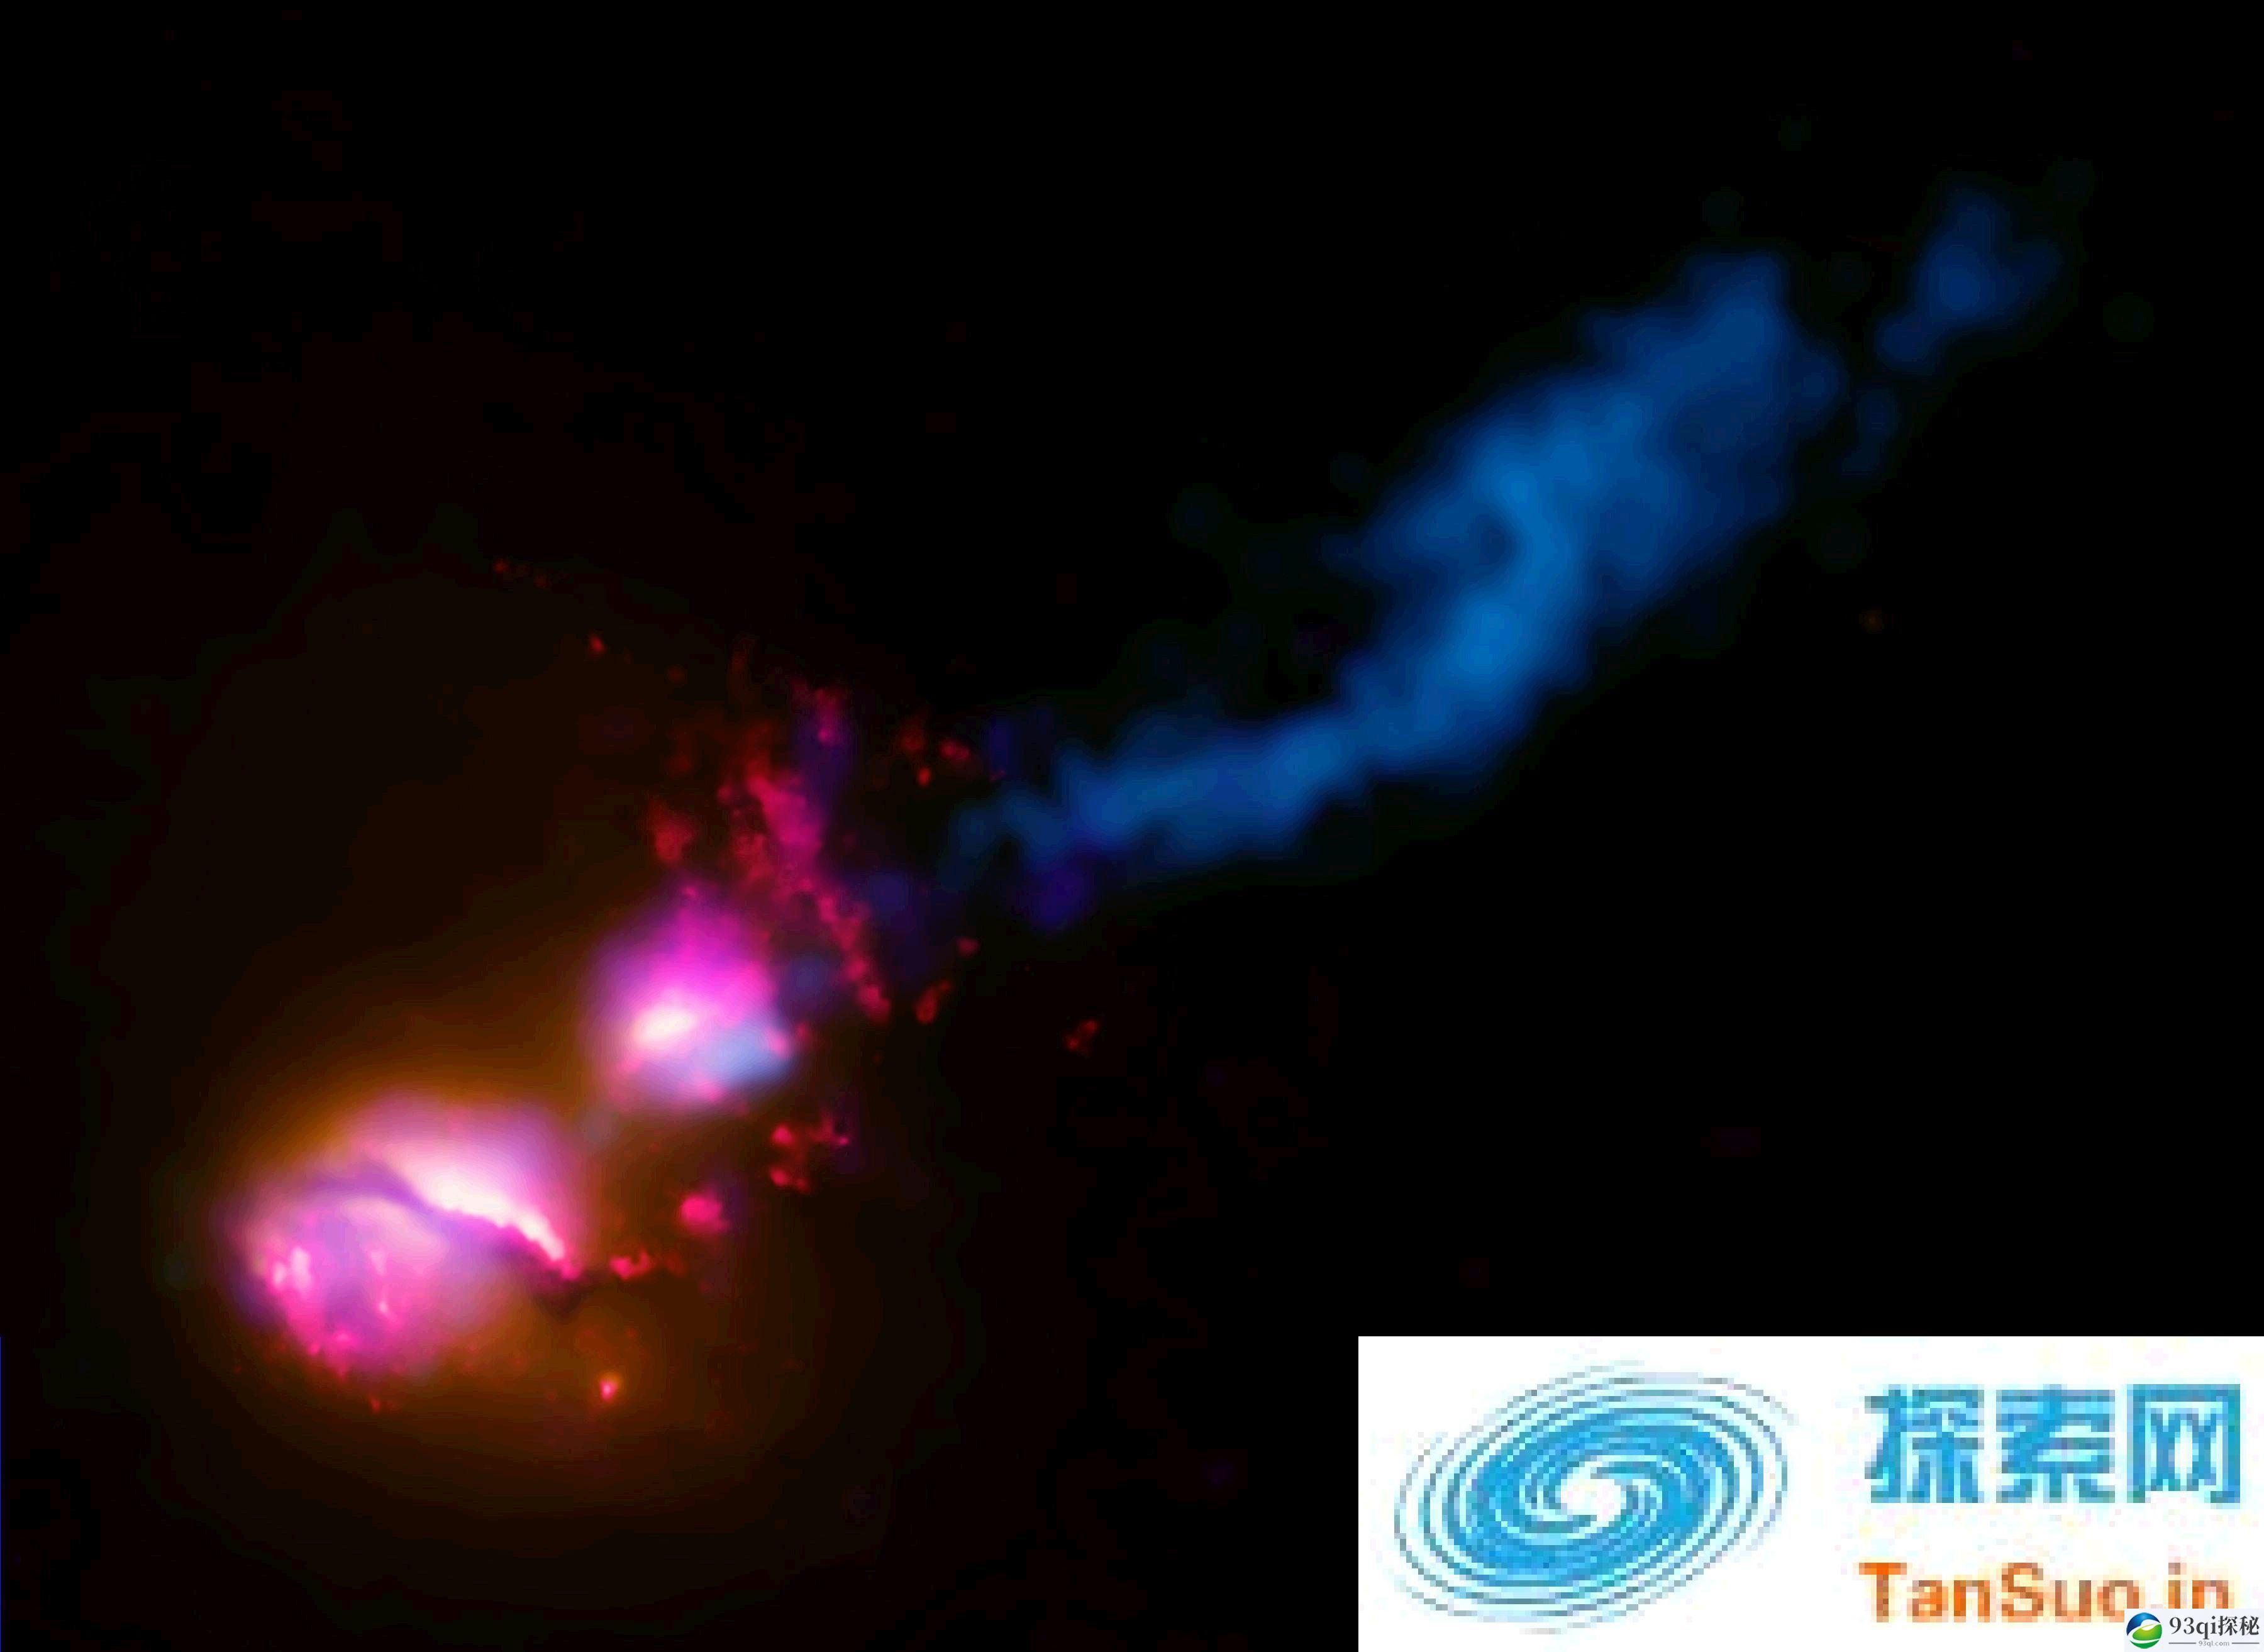 特大质量黑洞的喷射流撞击邻近星系